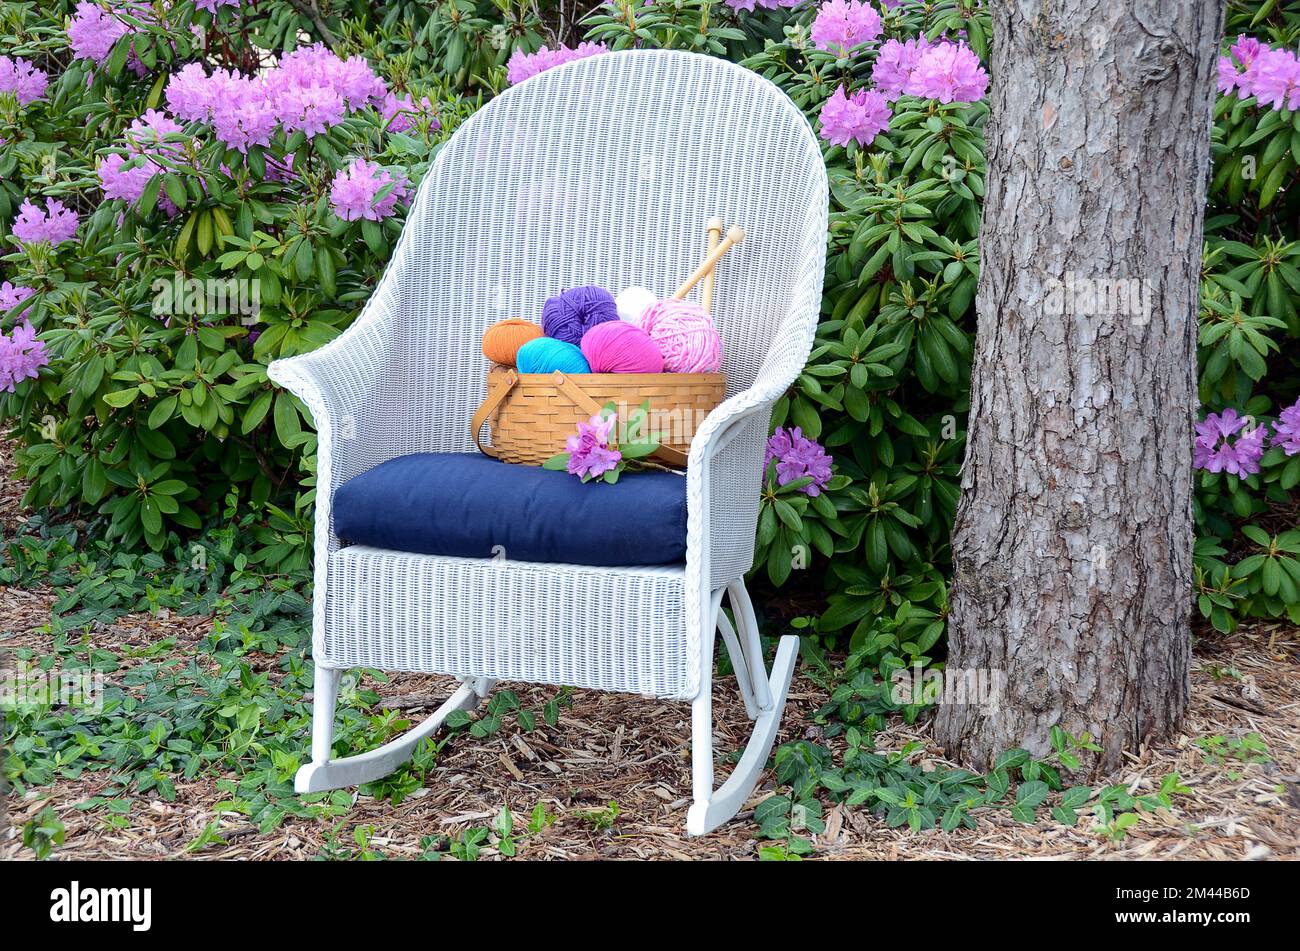 Fil coloré dans un panier sur un fauteuil à bascule en osier blanc dans un jardin de rhododendron Banque D'Images